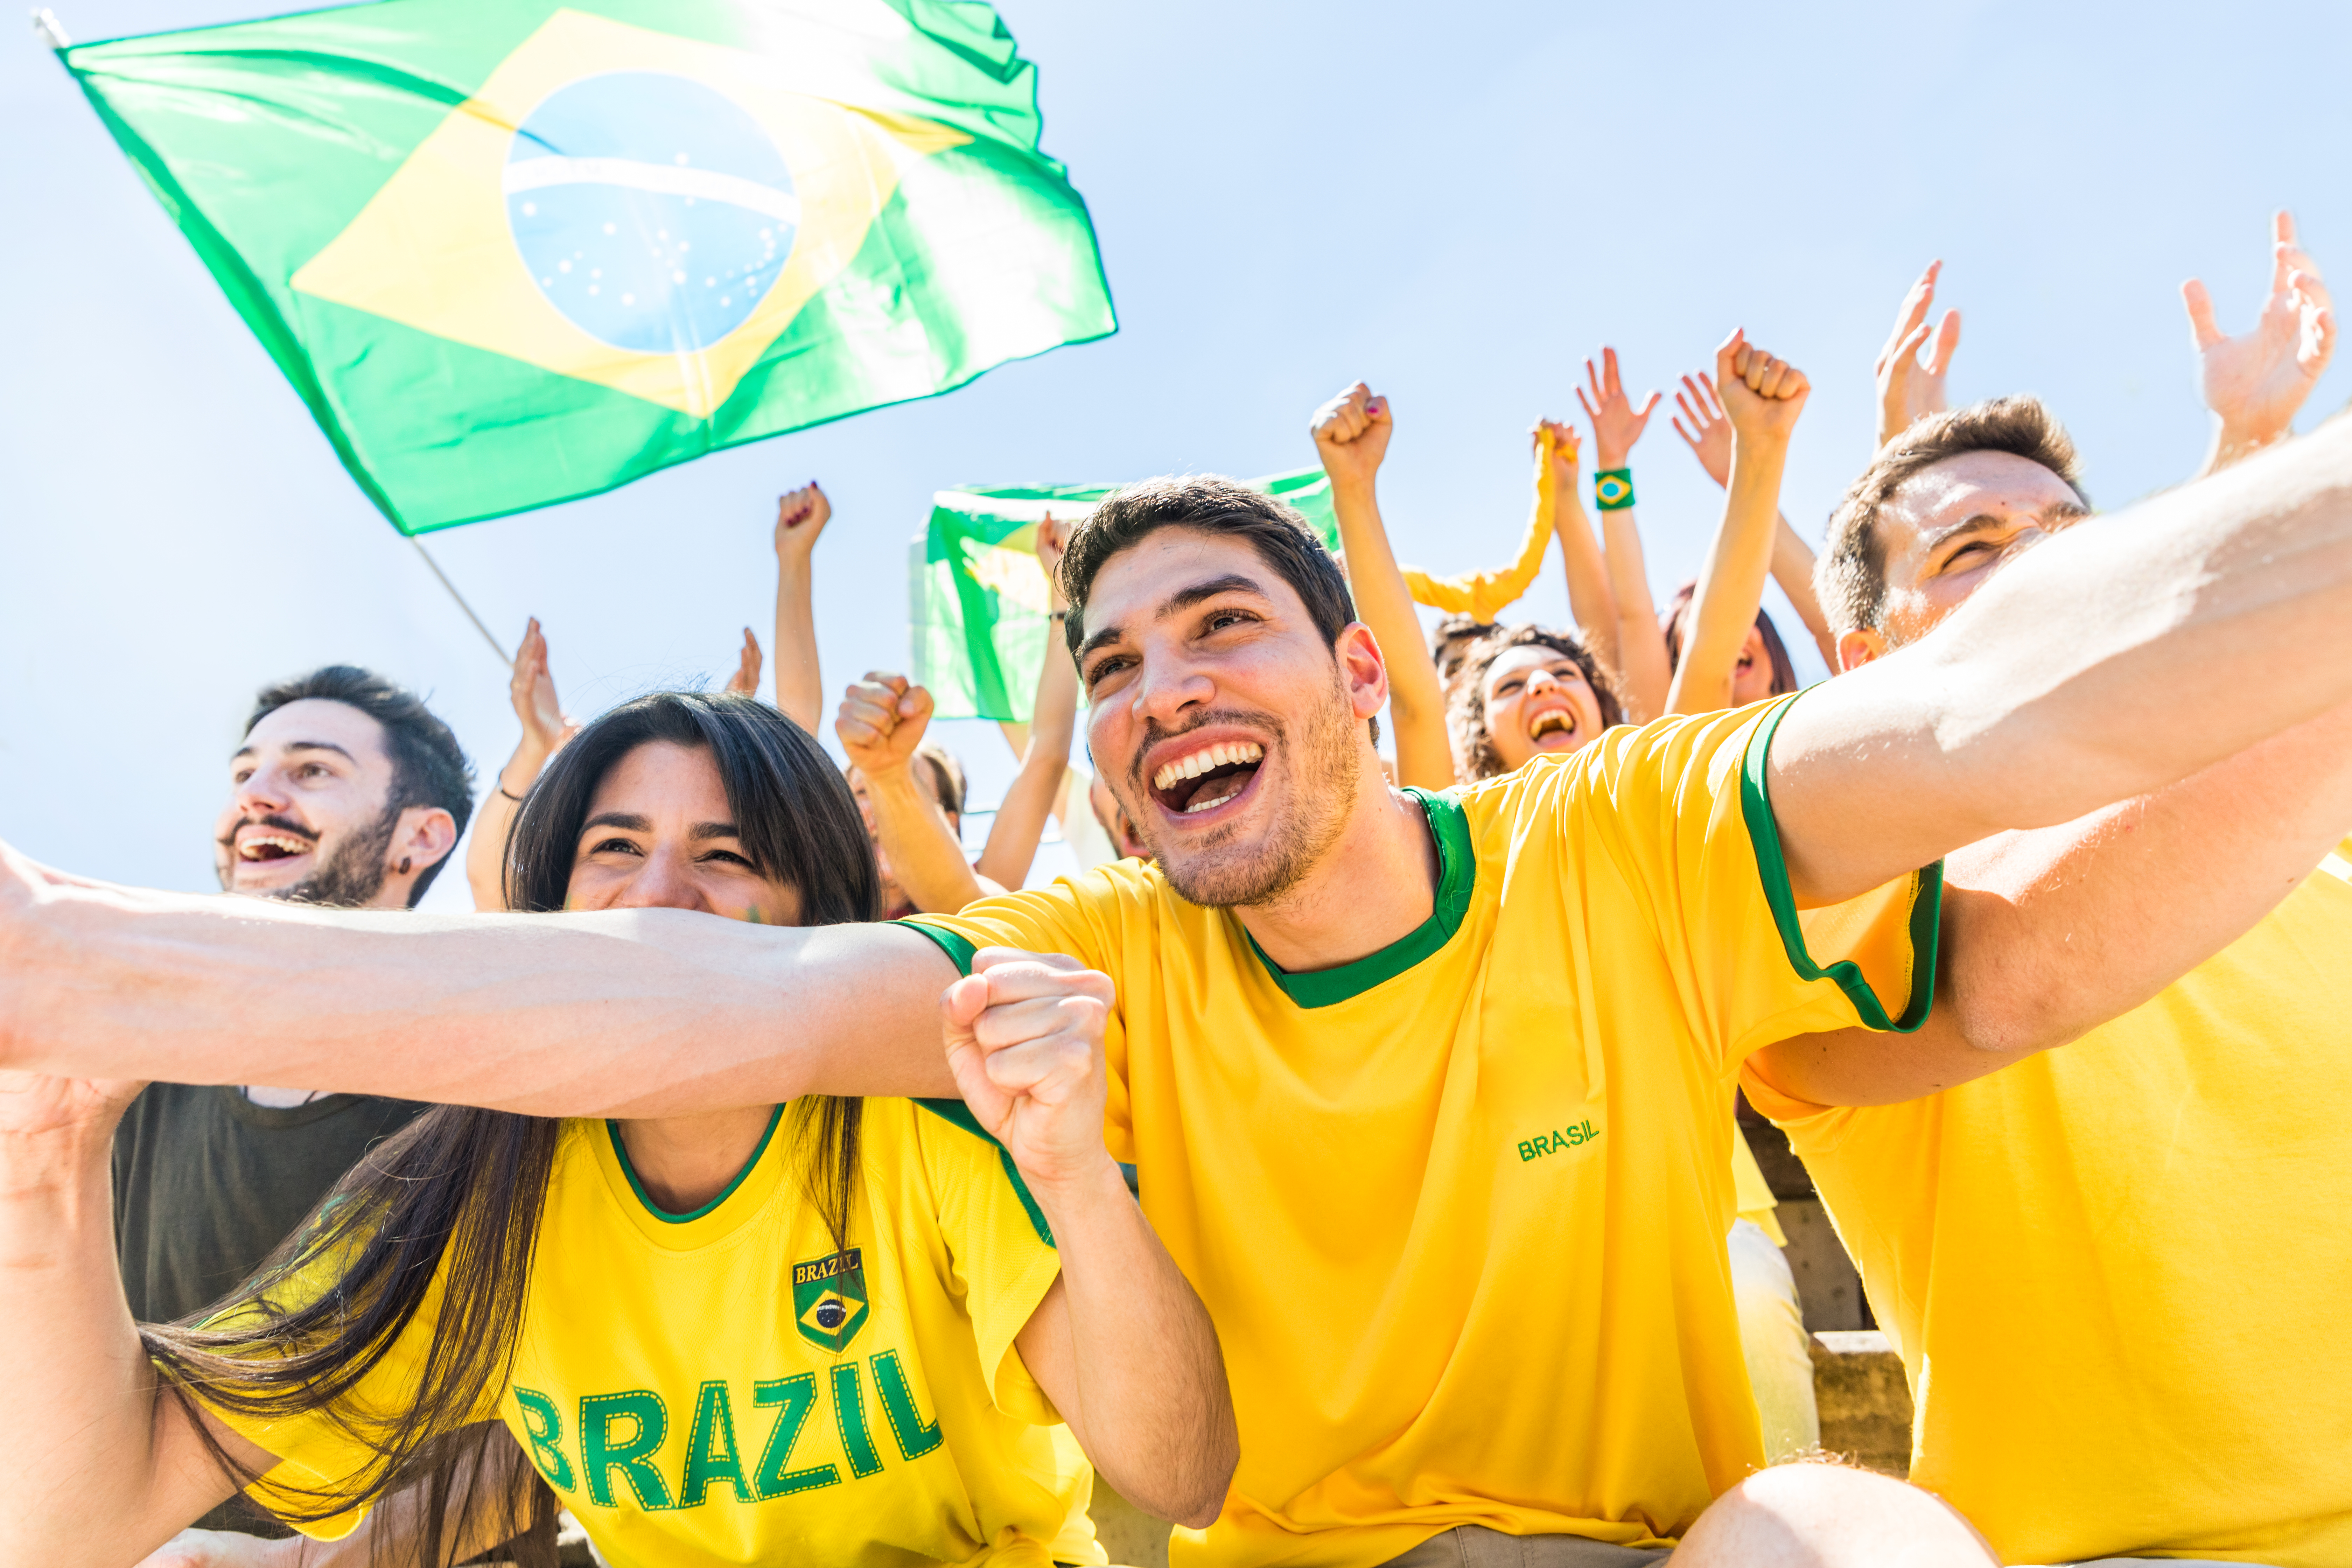 Prefeitura irá transmitir jogos da Seleção Brasileira na Copa do Mundo 2022